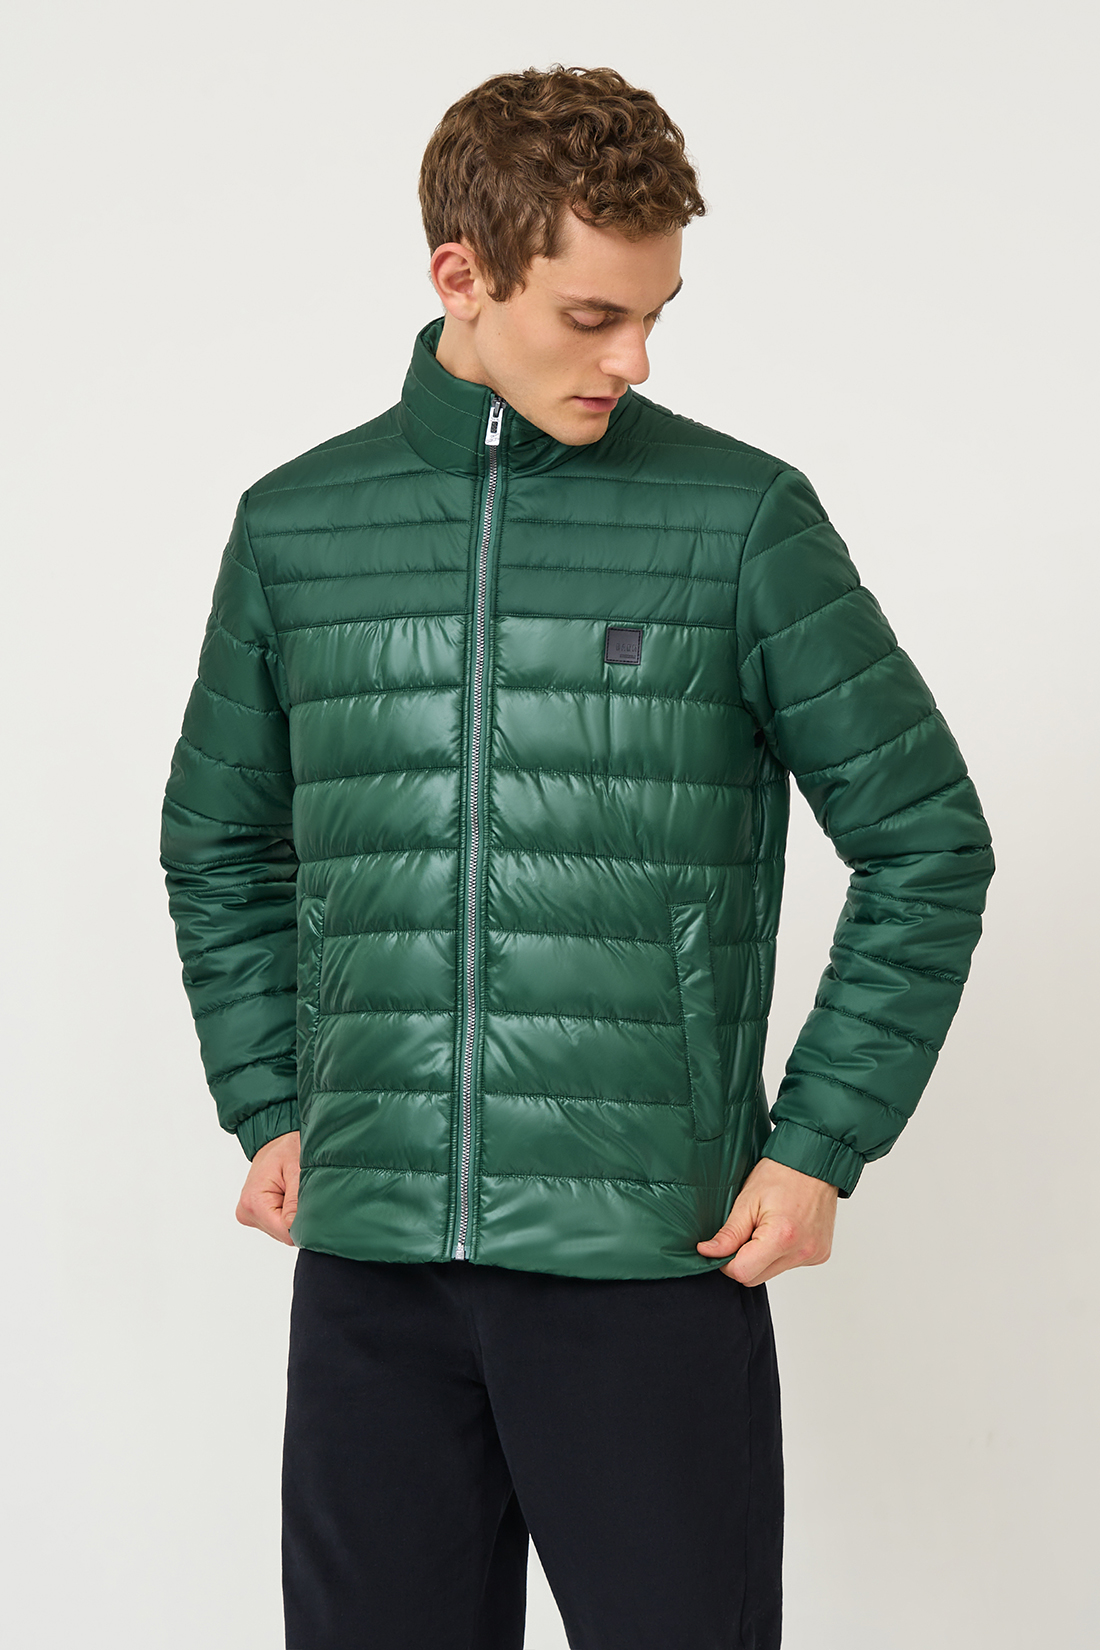 Зимняя куртка мужская Baon B5323504 зеленая L